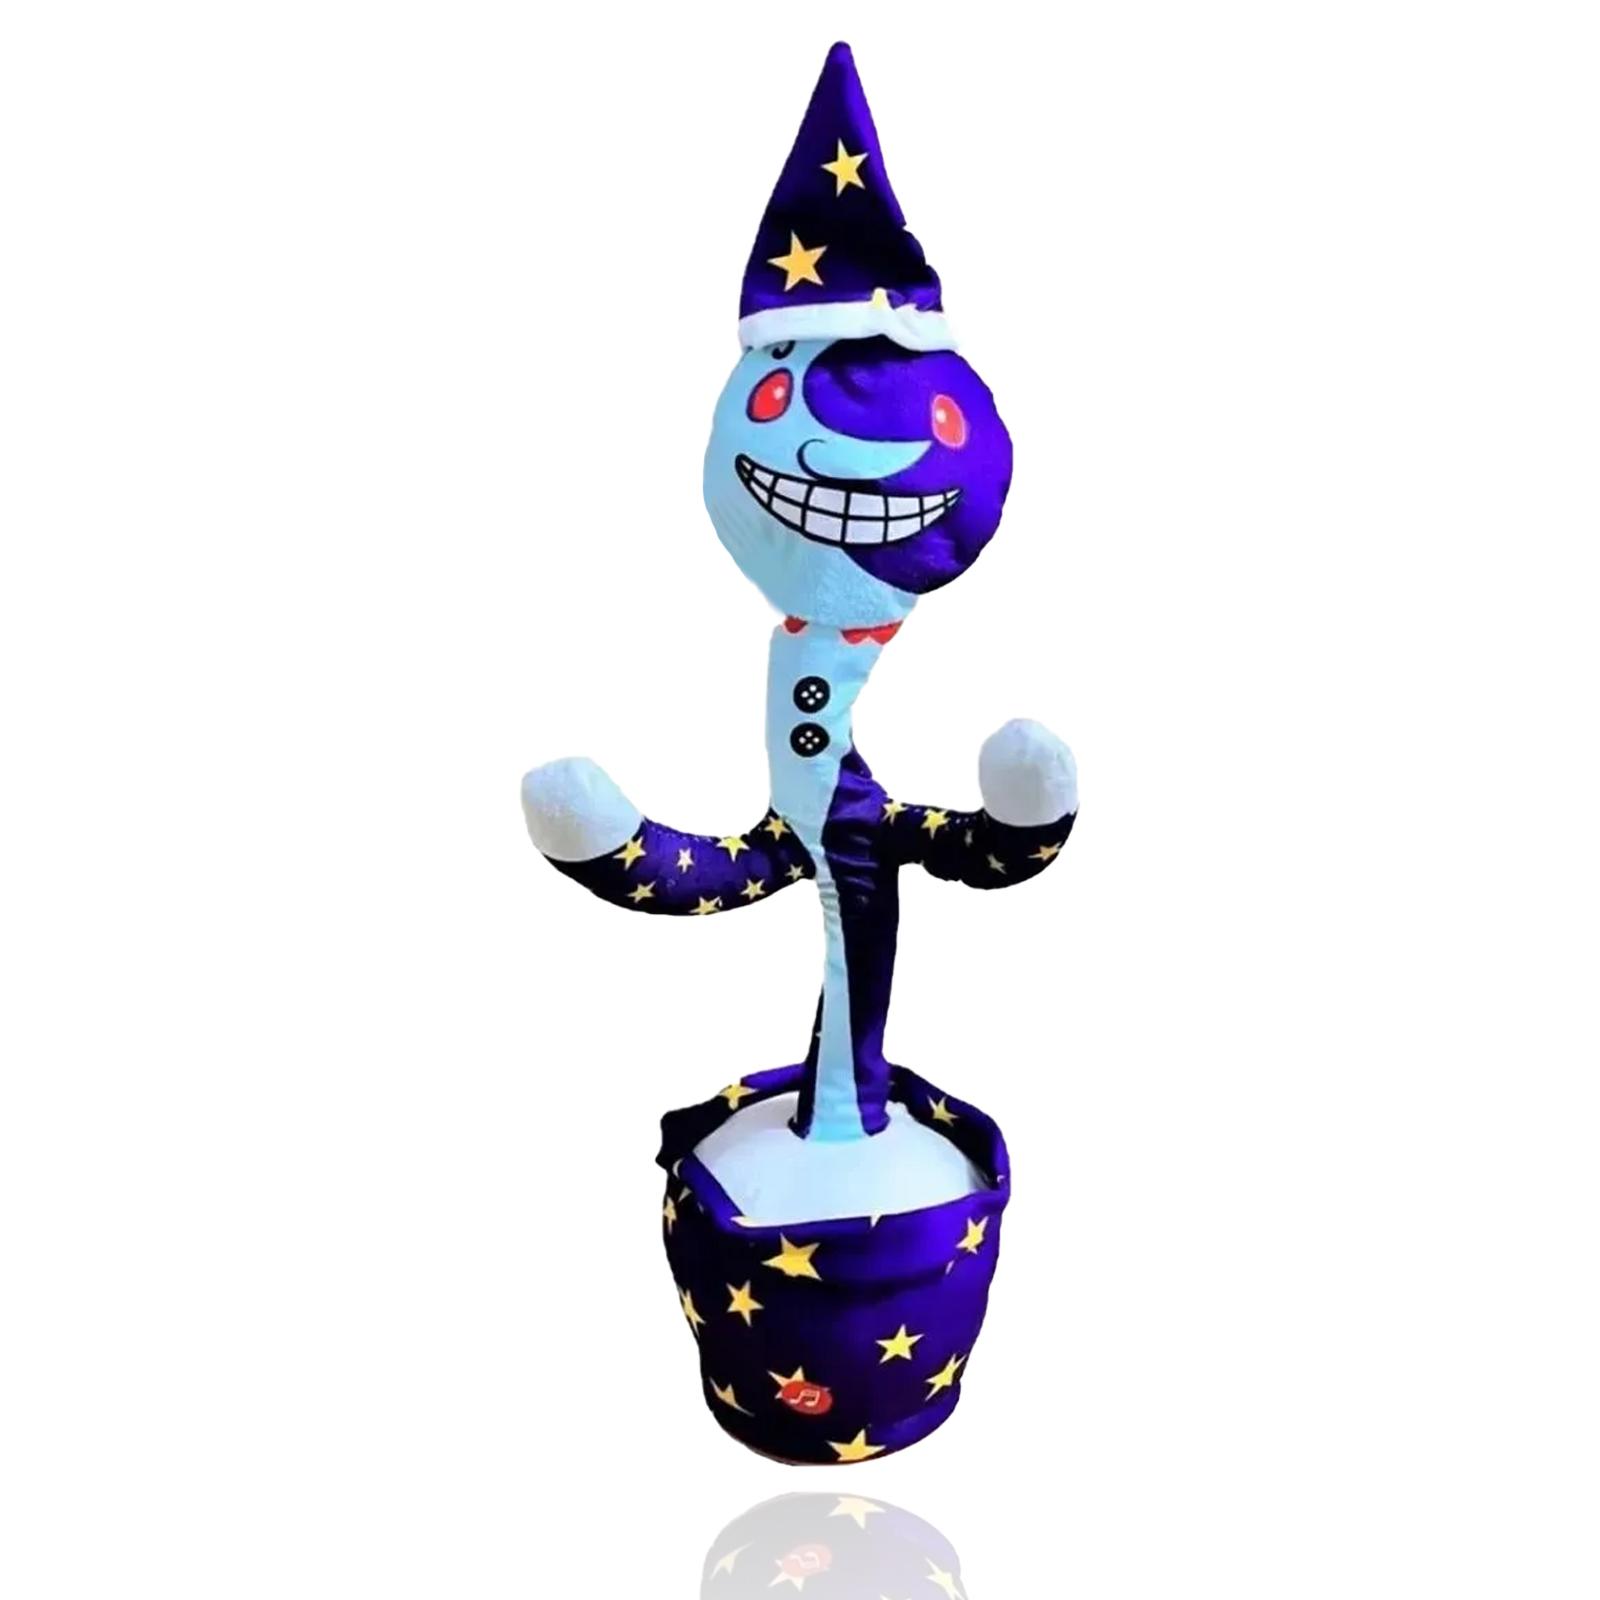 Интерактивный поющий и танцующий кактус - аниматроник Фнаф Fnaf Луна 5 ночей с Фредди мягкая игрушка plush story аниматроник fnaf9 луна 25 см фиолетовый